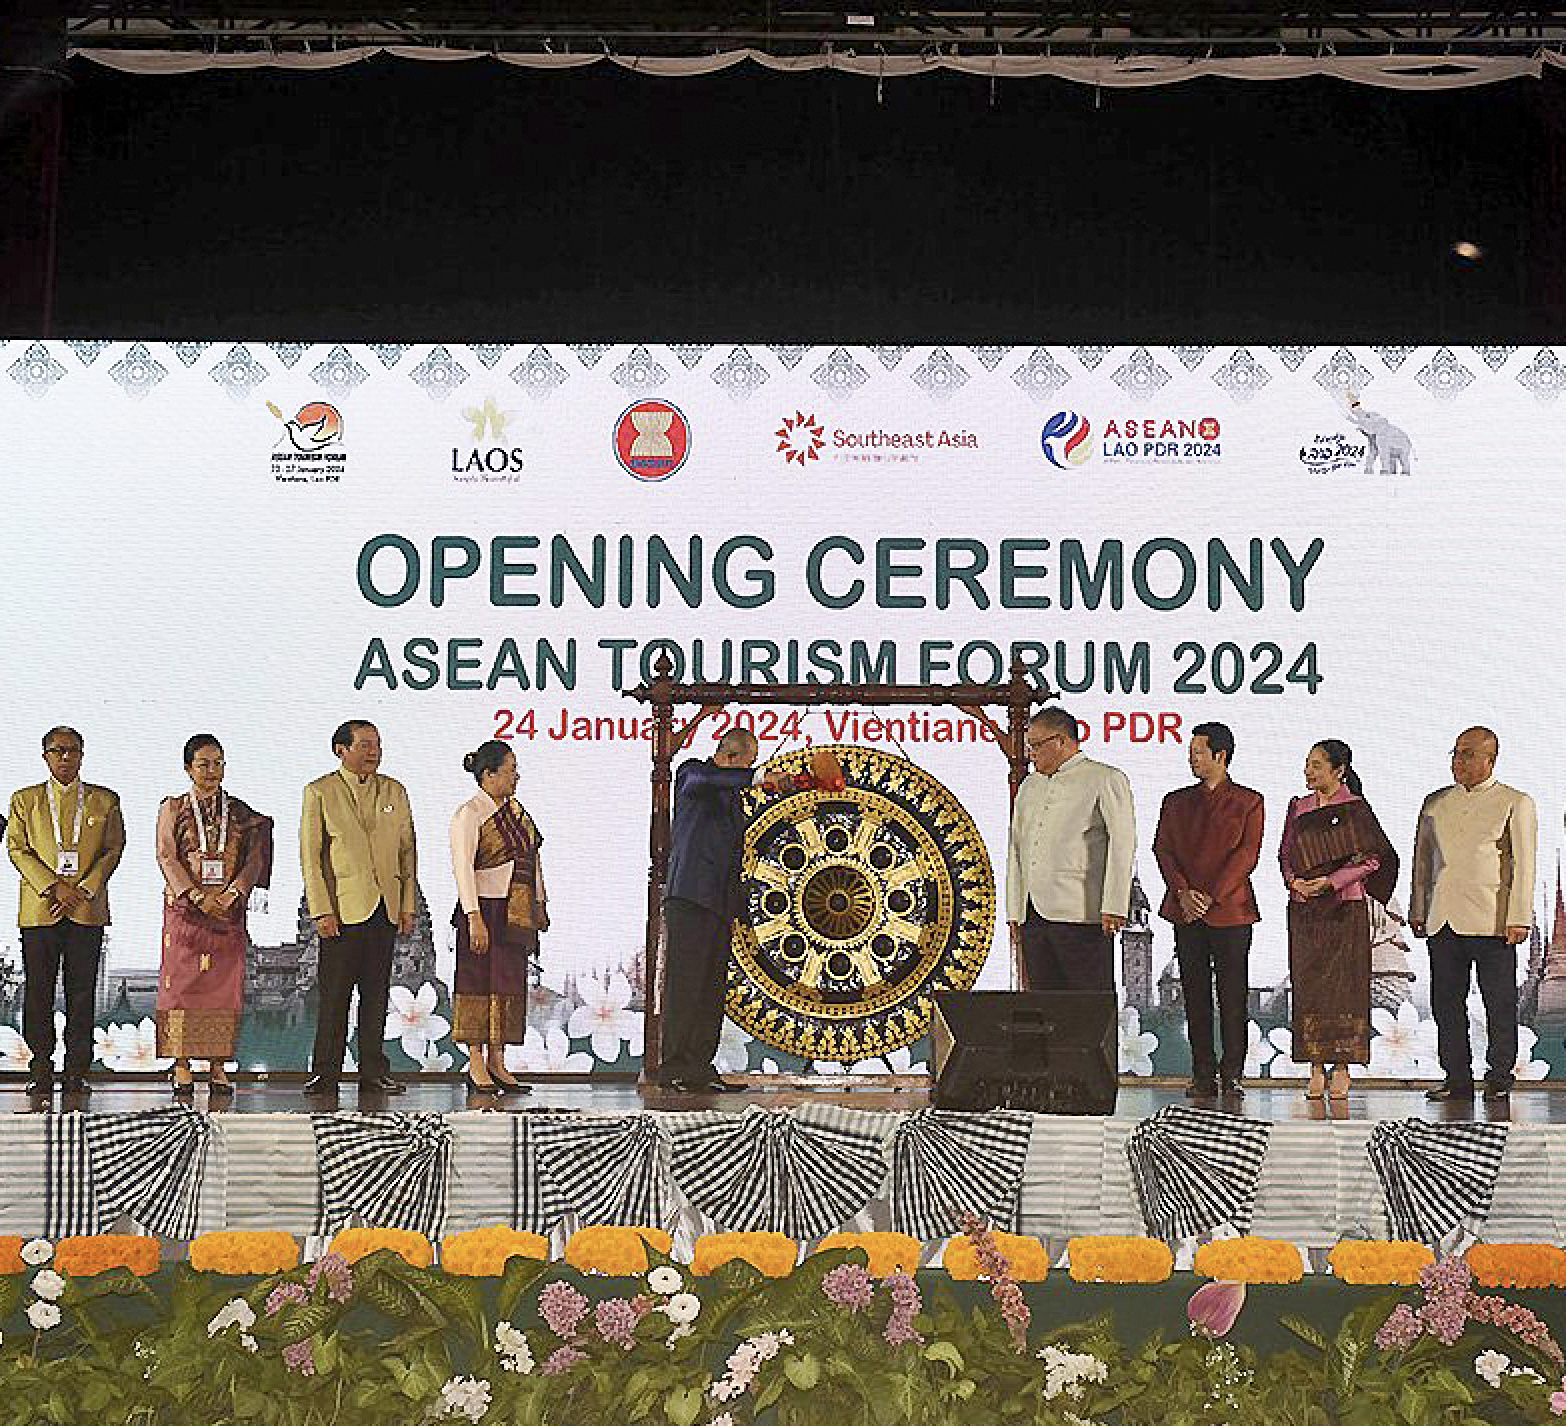 Diễn đàn Du lịch ASEAN 2024 tại Lào: Cơ hội bứt phá cho ngành Du lịch ASEAN